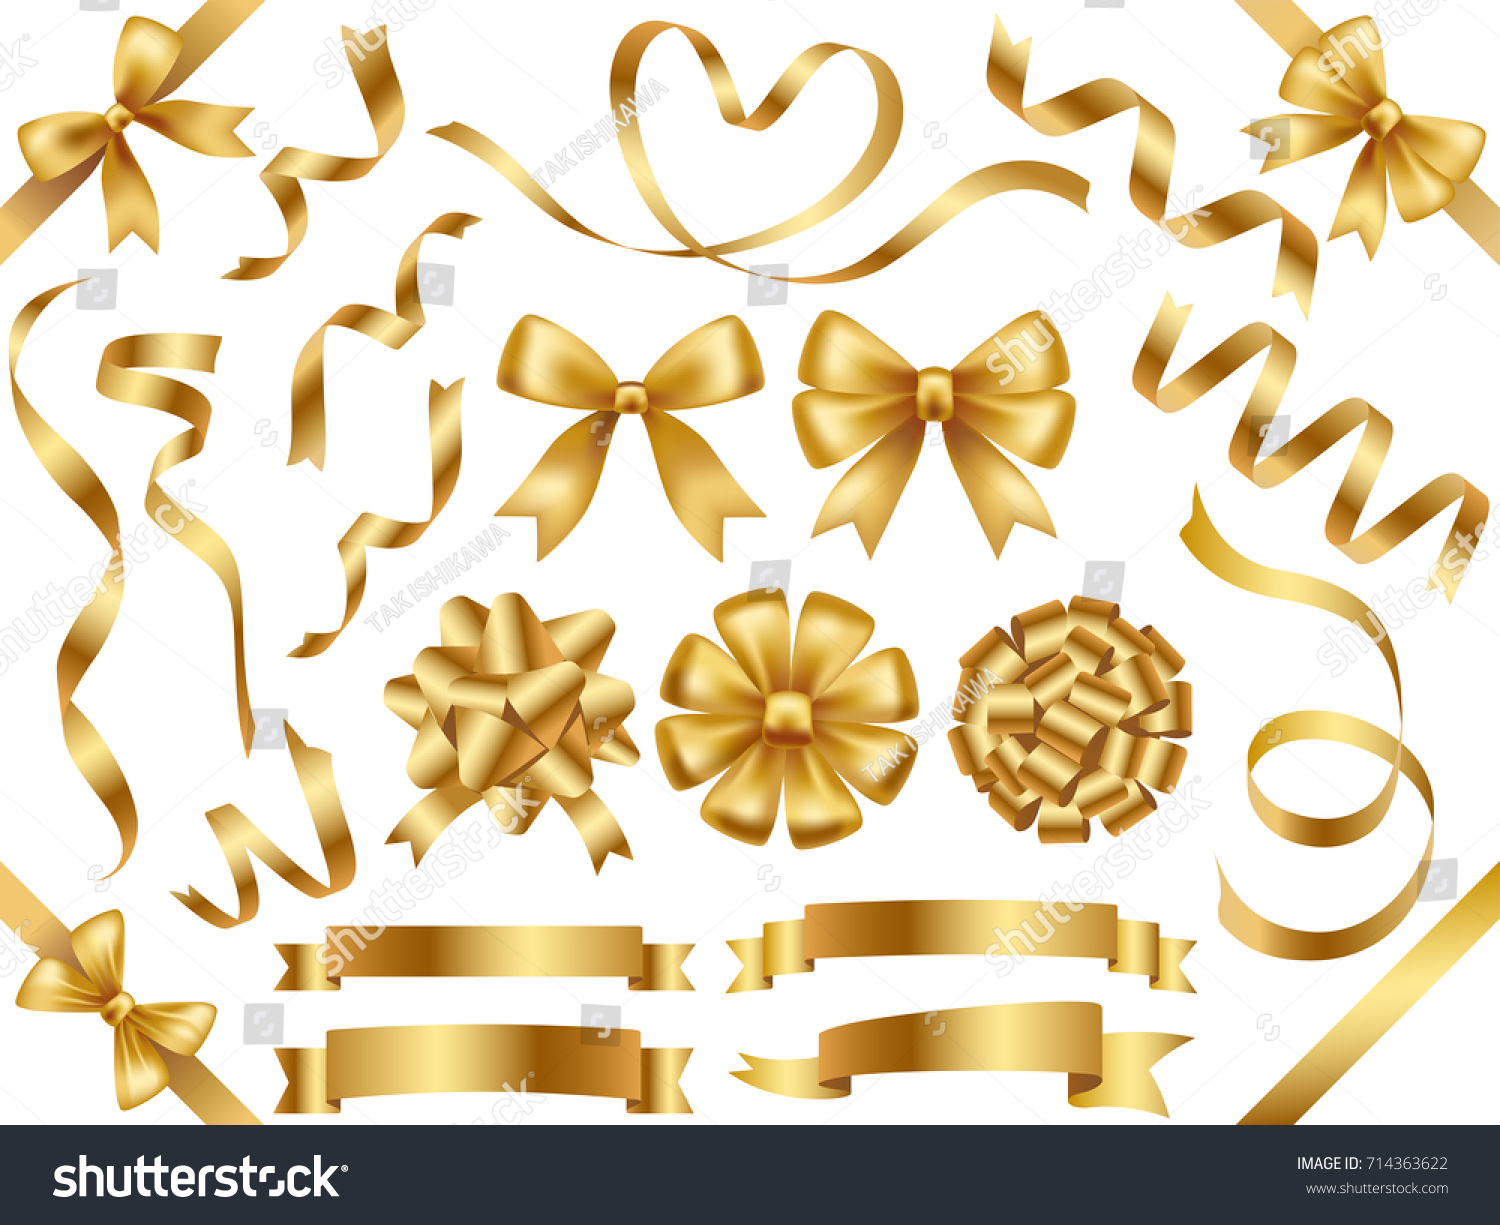 A set of various gold vector ribbons. #714363622